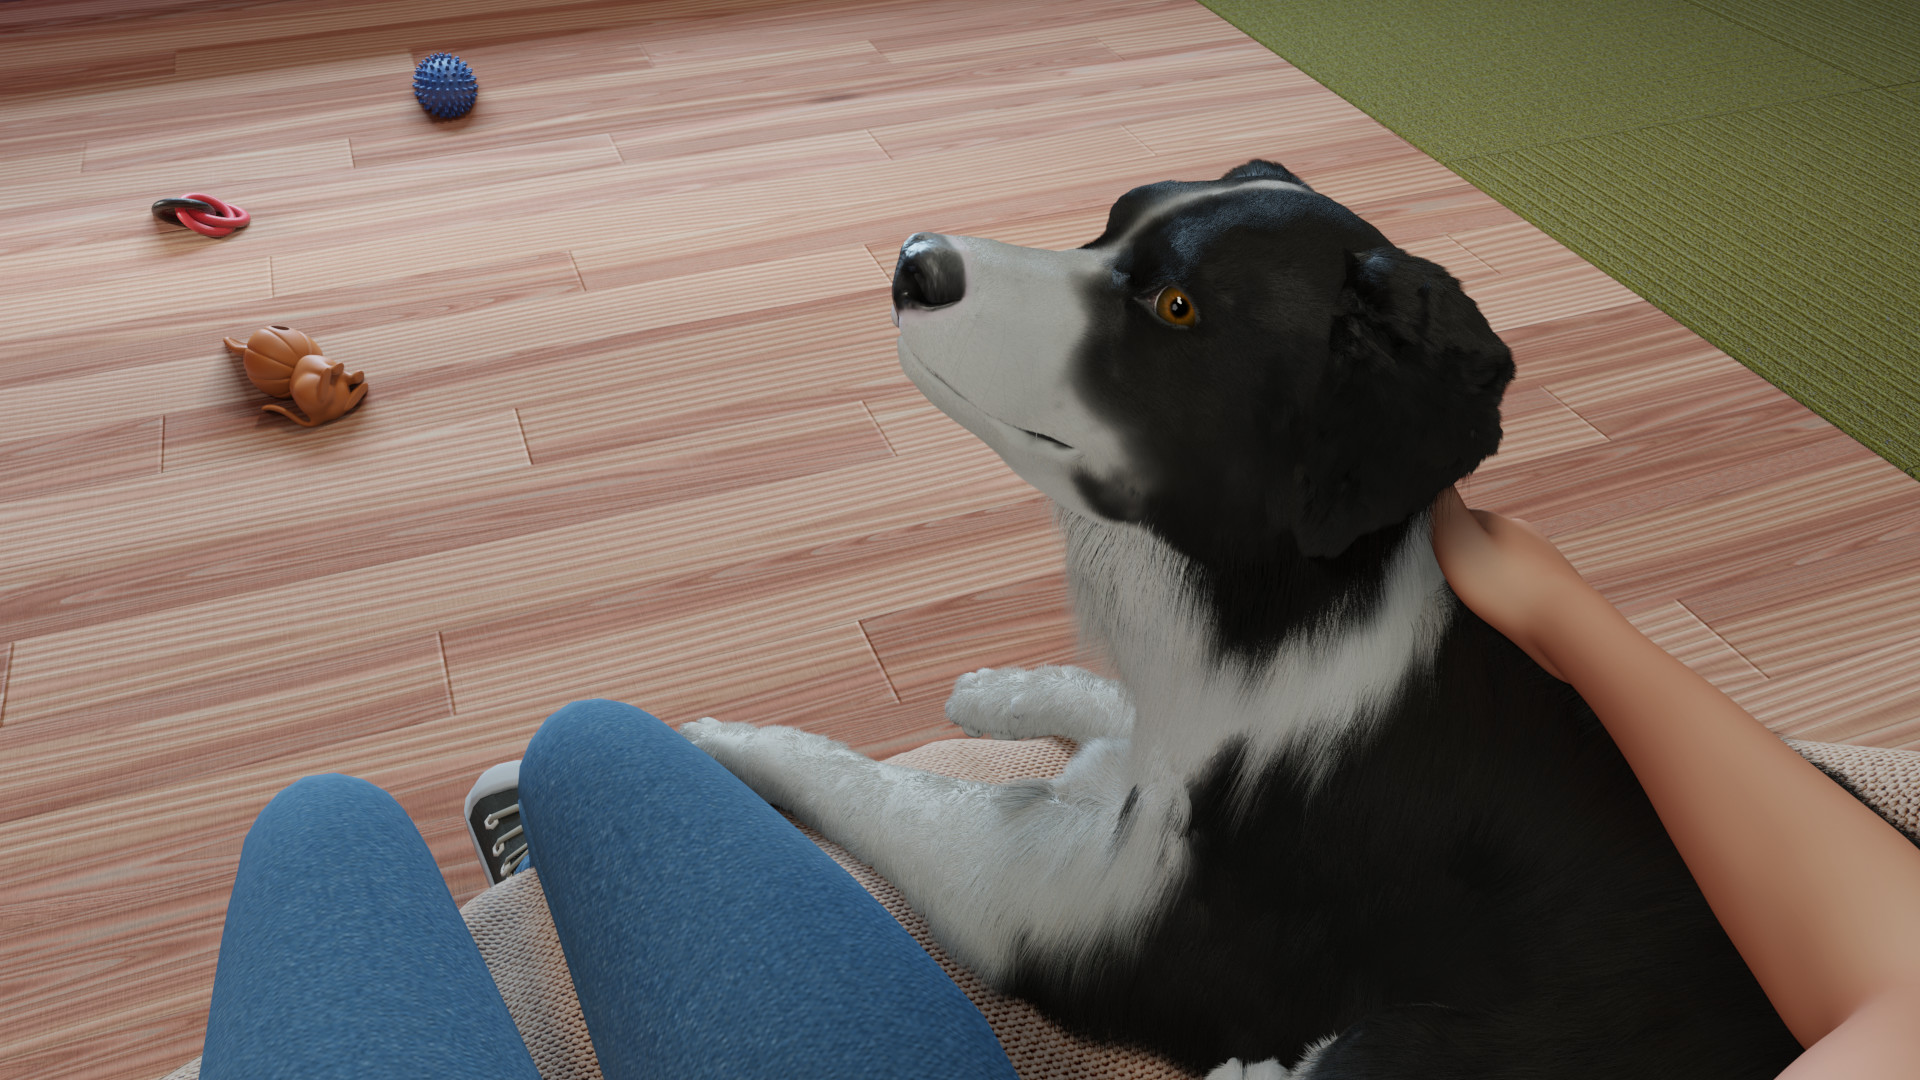 Dog Trainer on Steam